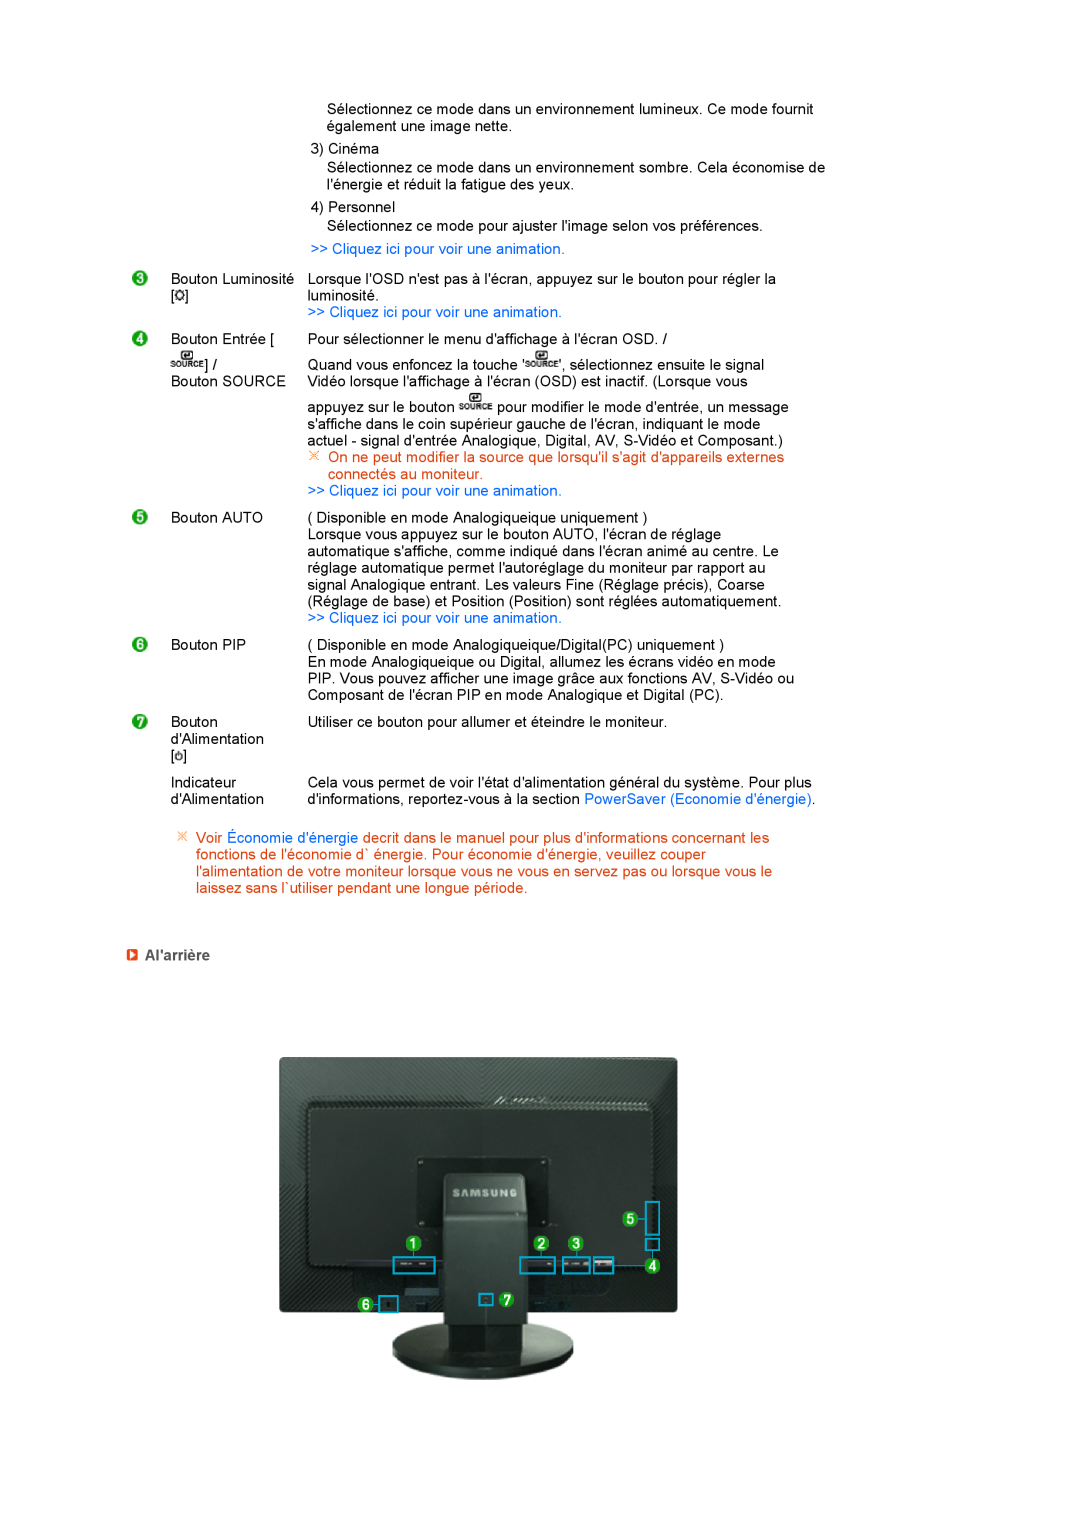 Samsung LS27HUBCBS/EDC, LS27HUBCB/EDC manual Cliquez ici pour voir une animation, connectés au moniteur, Alarrière 